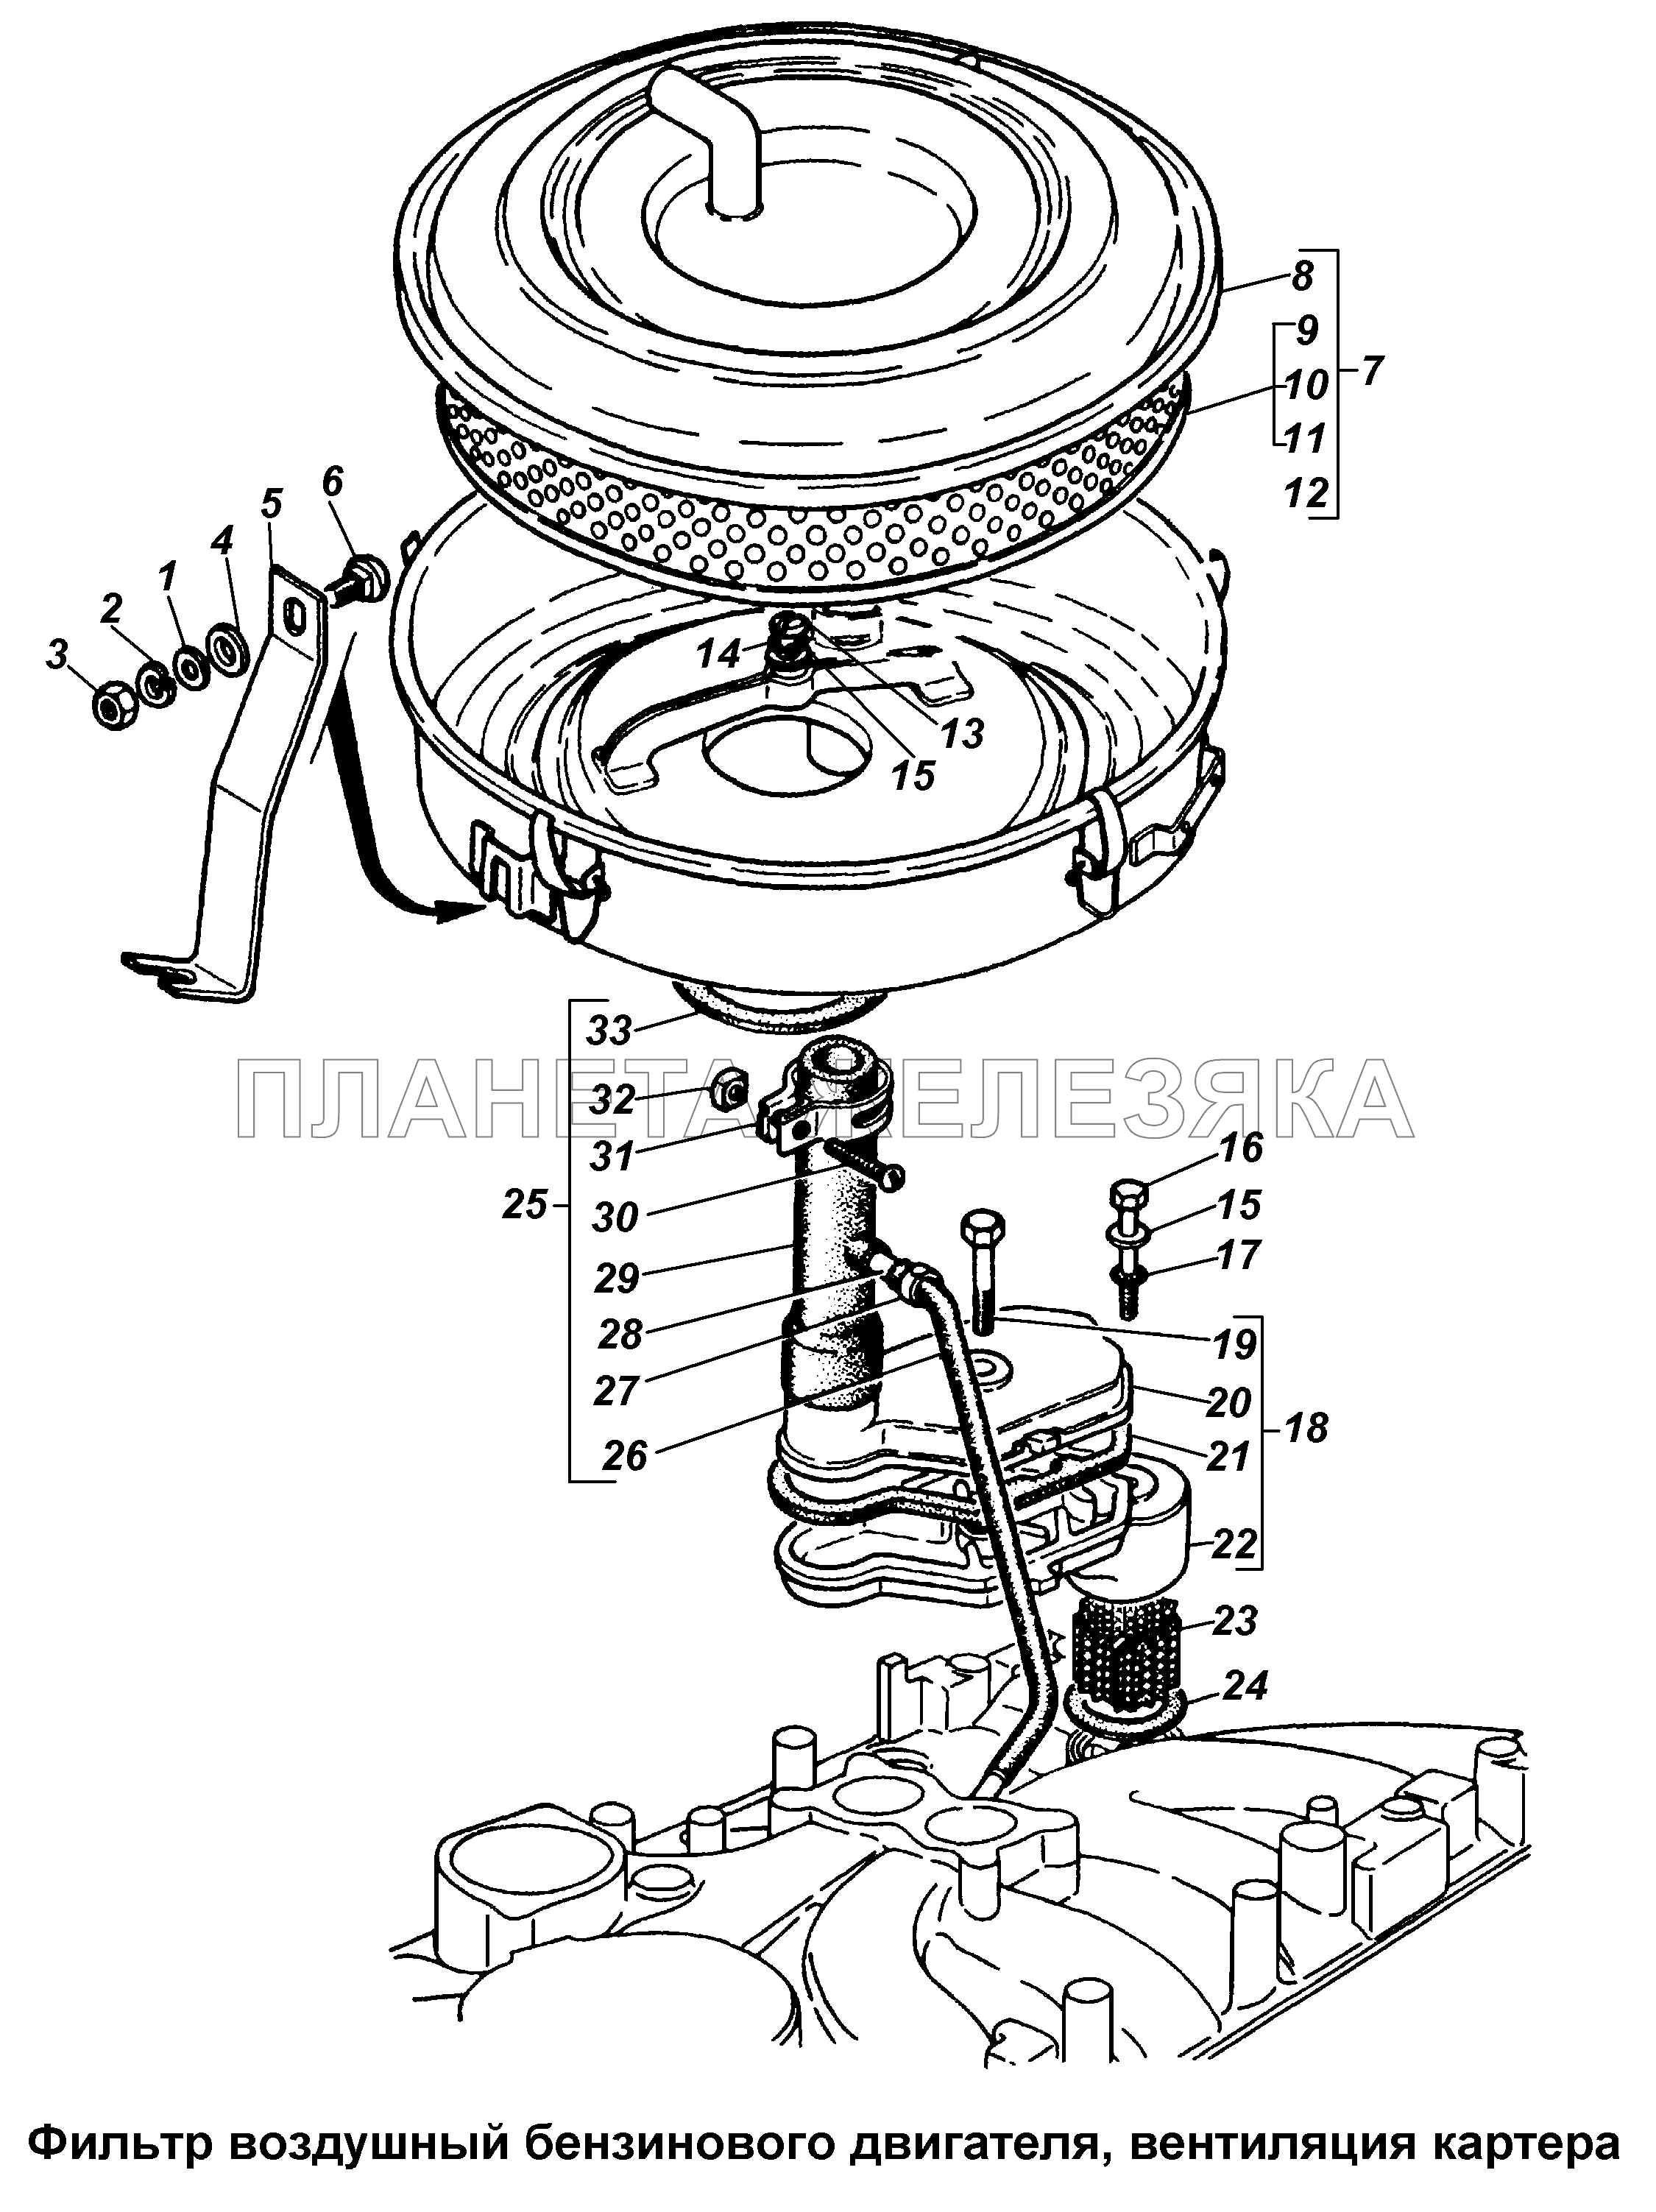 Фильтр воздушный бензинового двигателя, вентиляция картера ГАЗ-3308